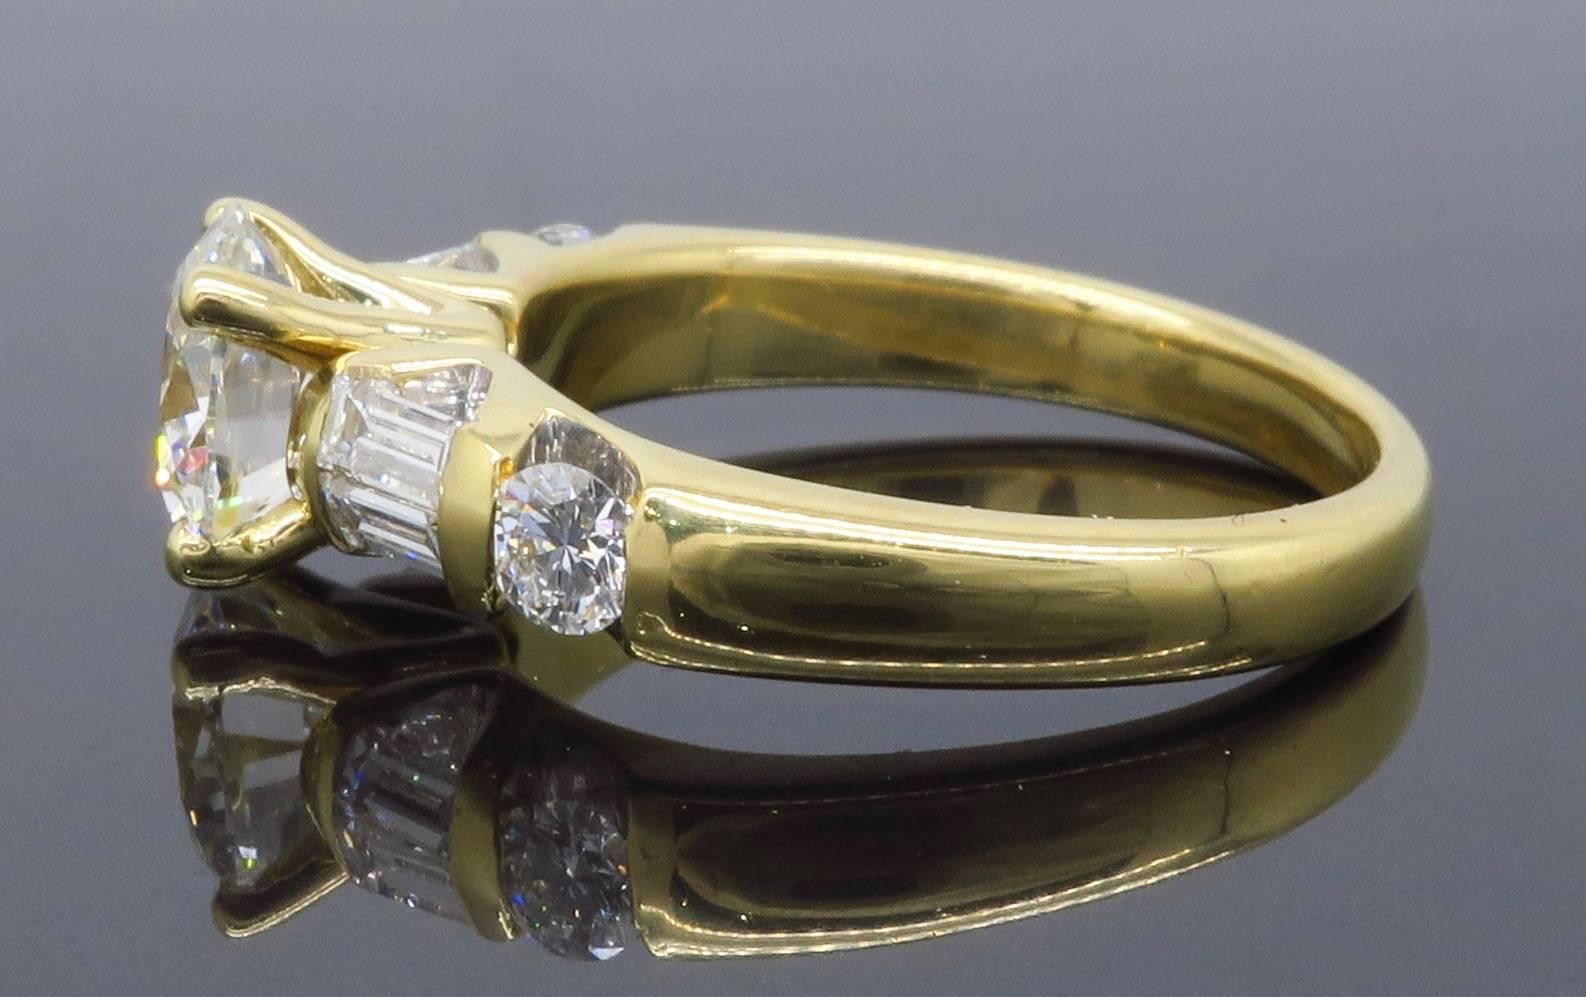 Women's or Men's GIA Certified 1.66 Carat Diamond Engagement Ring in 18 Karat Yellow Gold